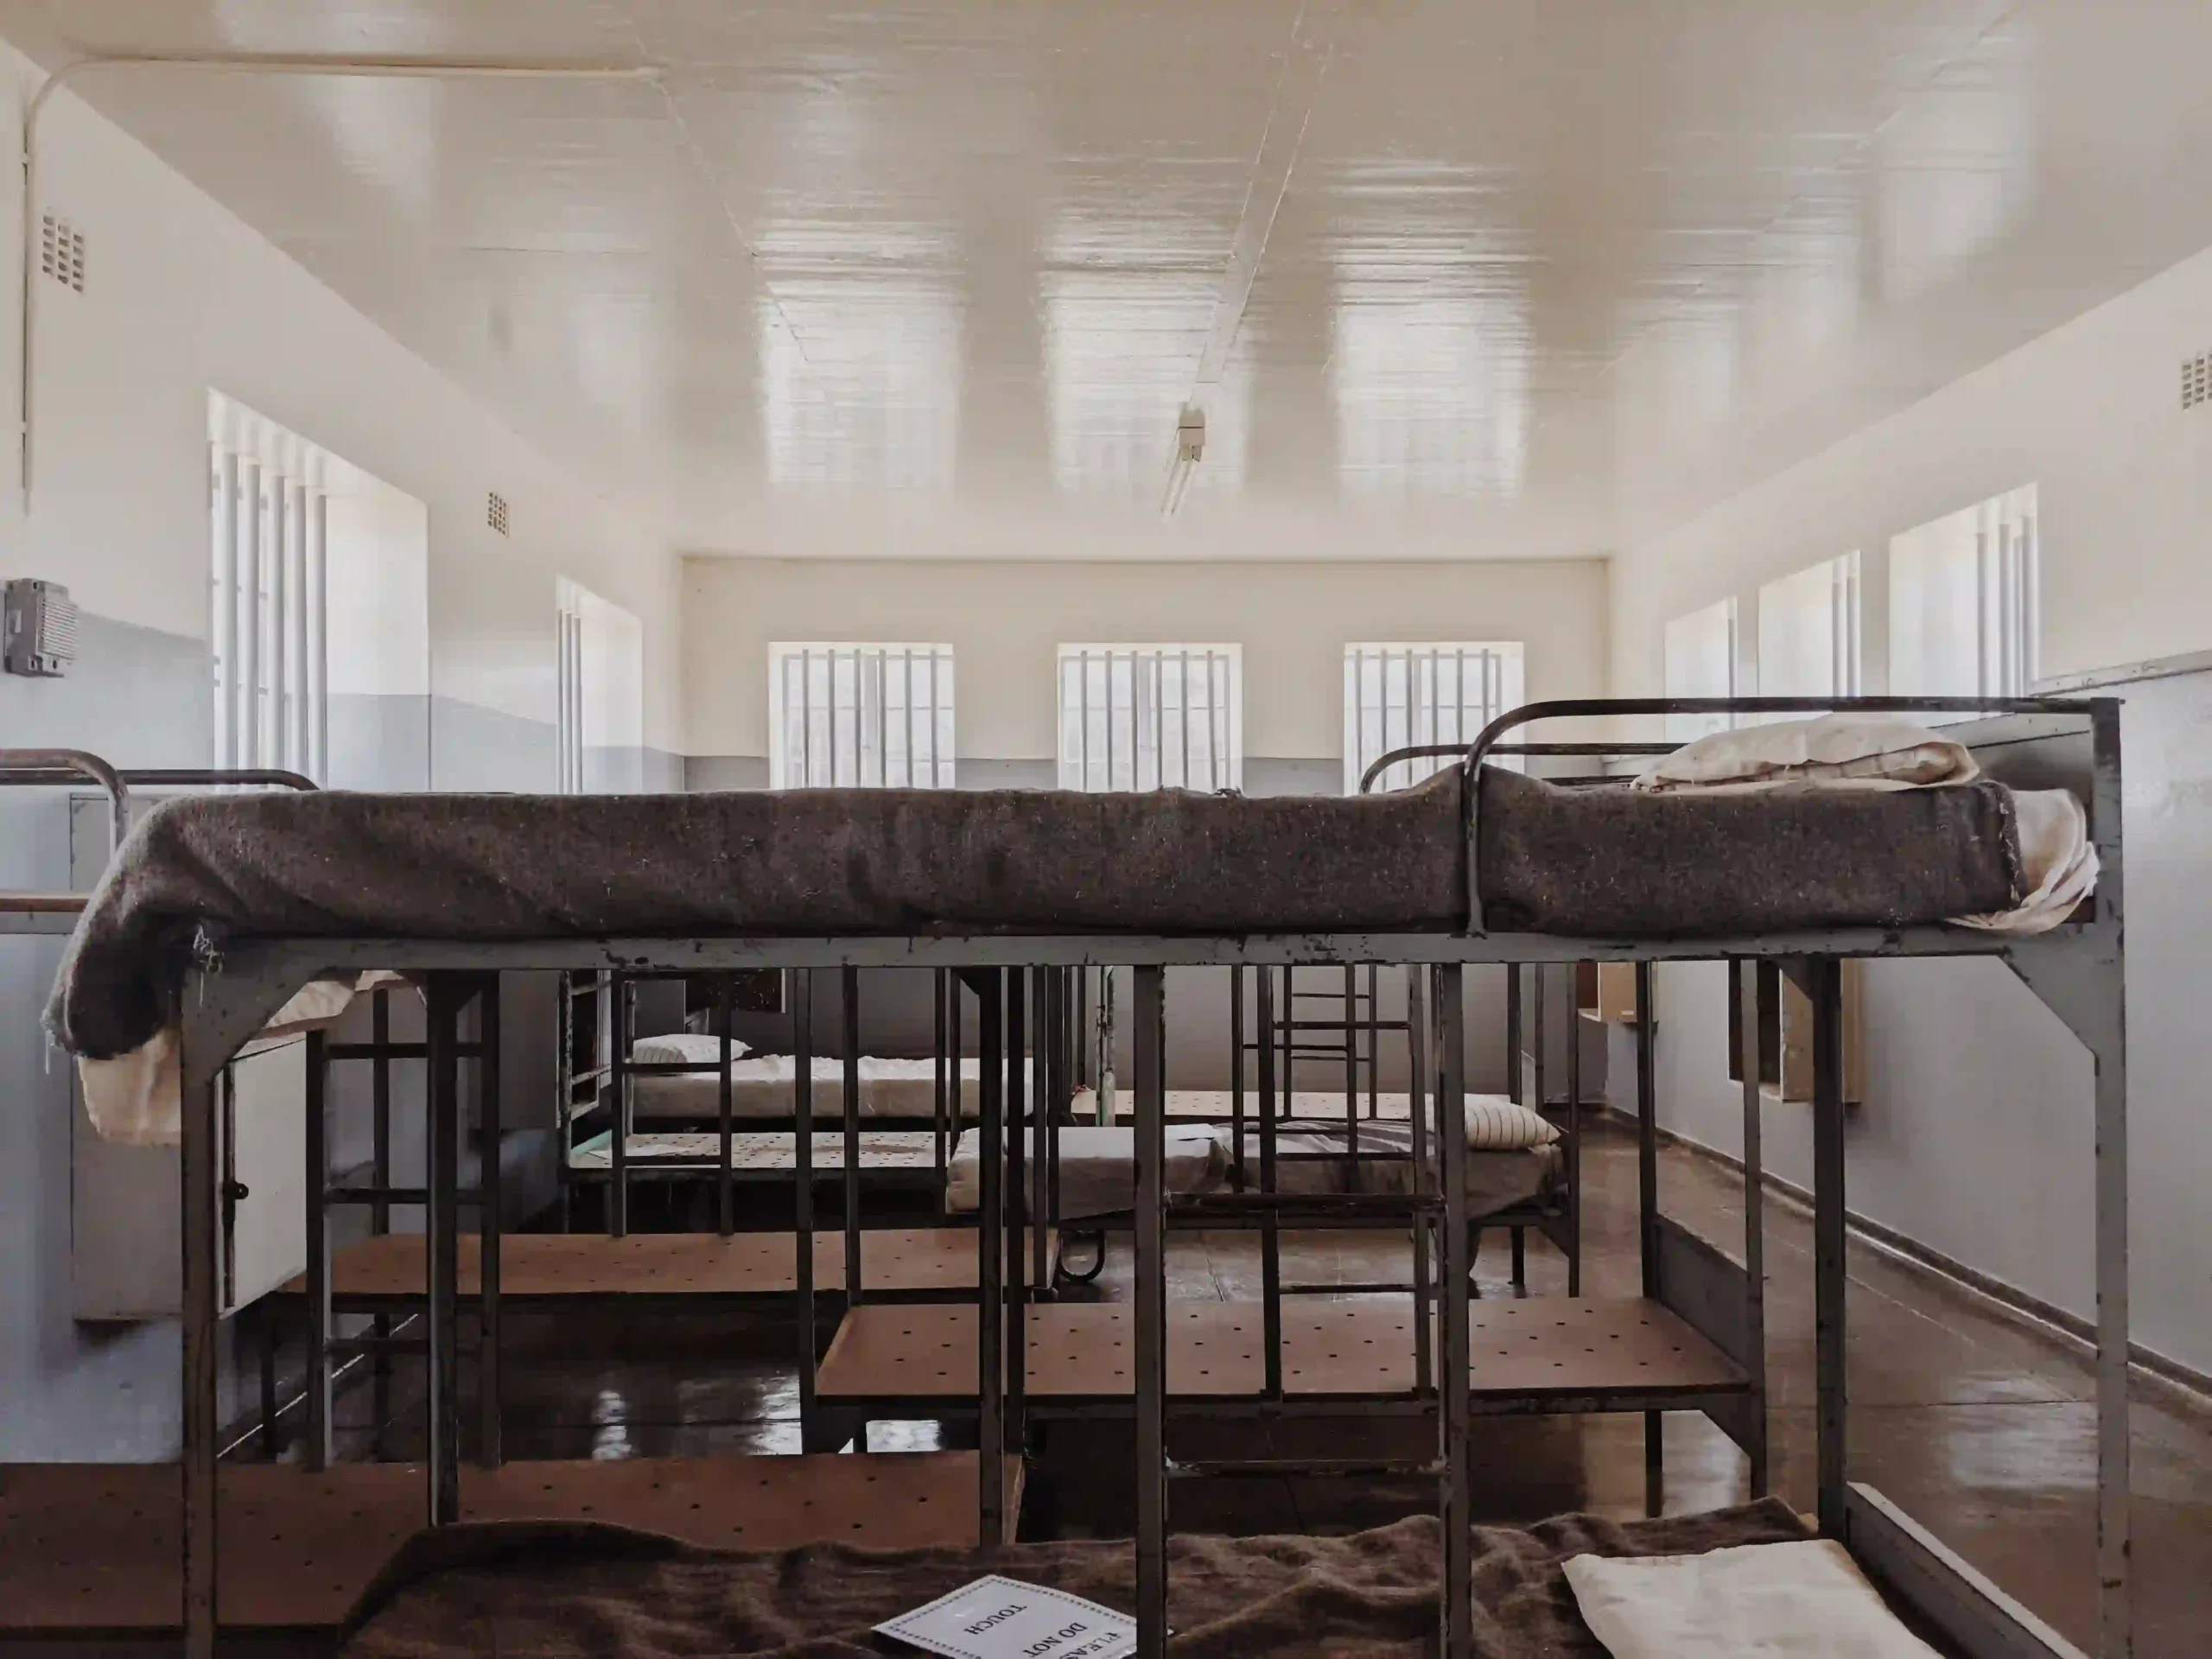 Des lits superposés dans une chambre à la prison de robben island